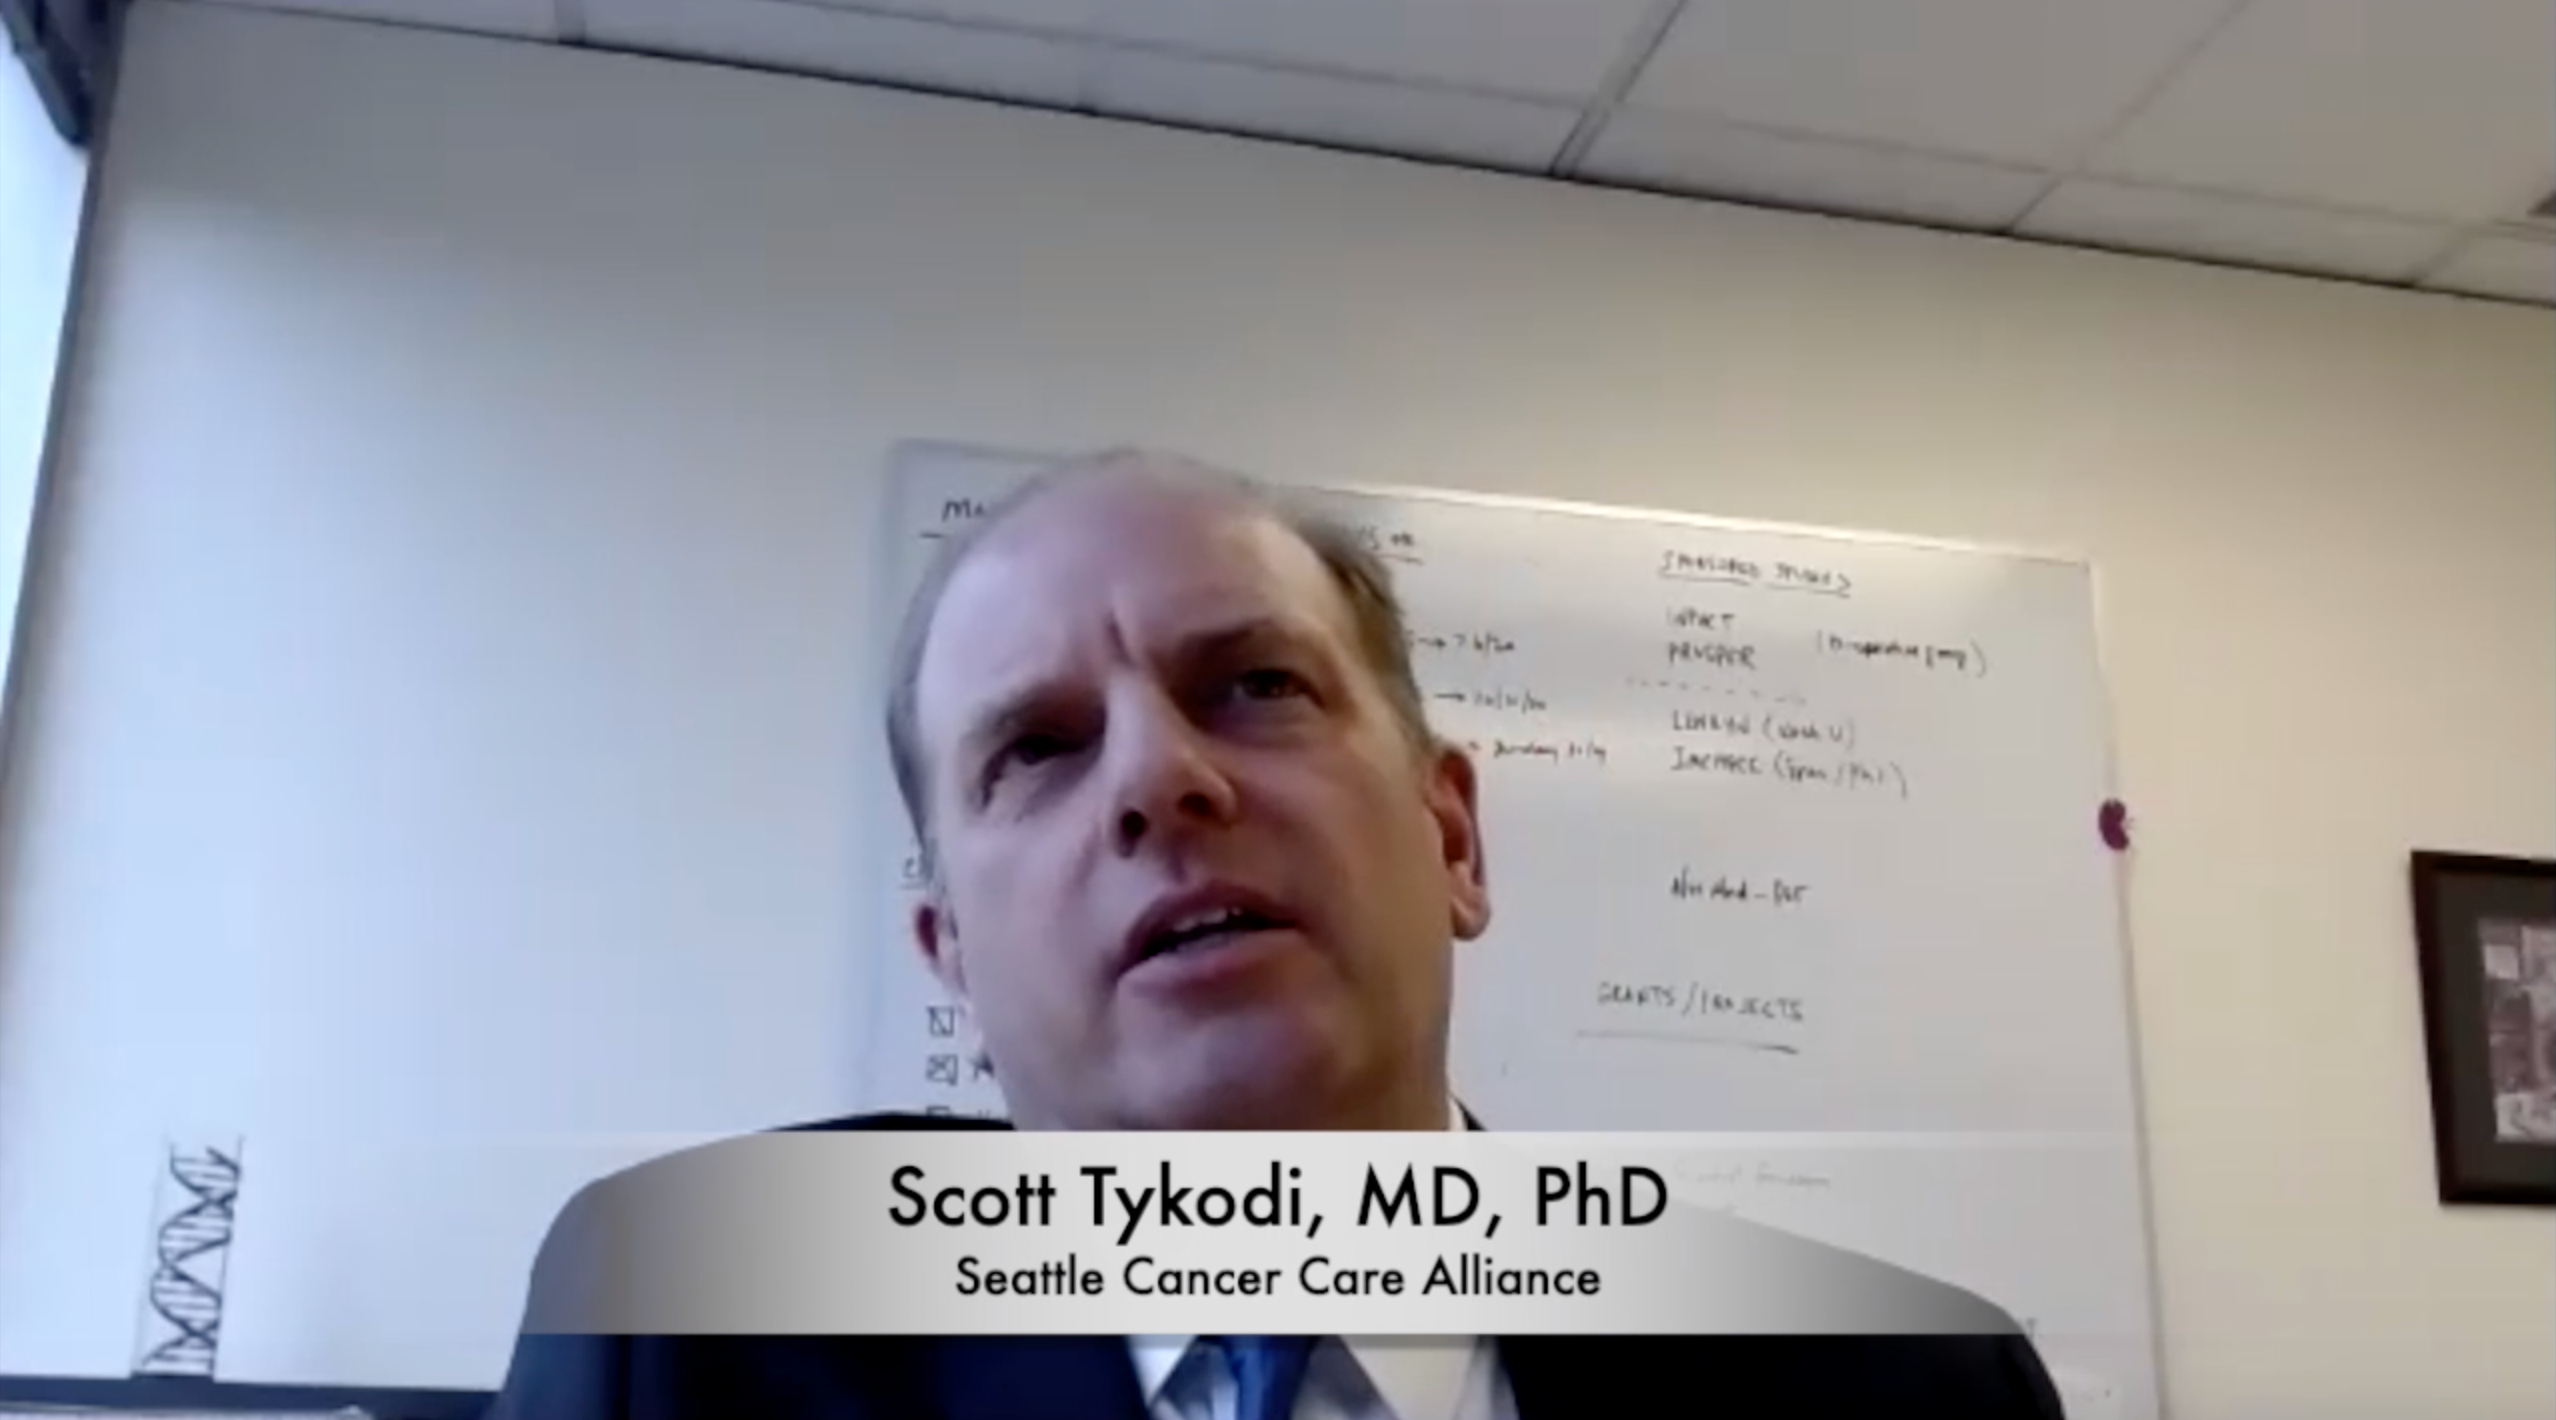 Scott Tykodi, MD, PhD